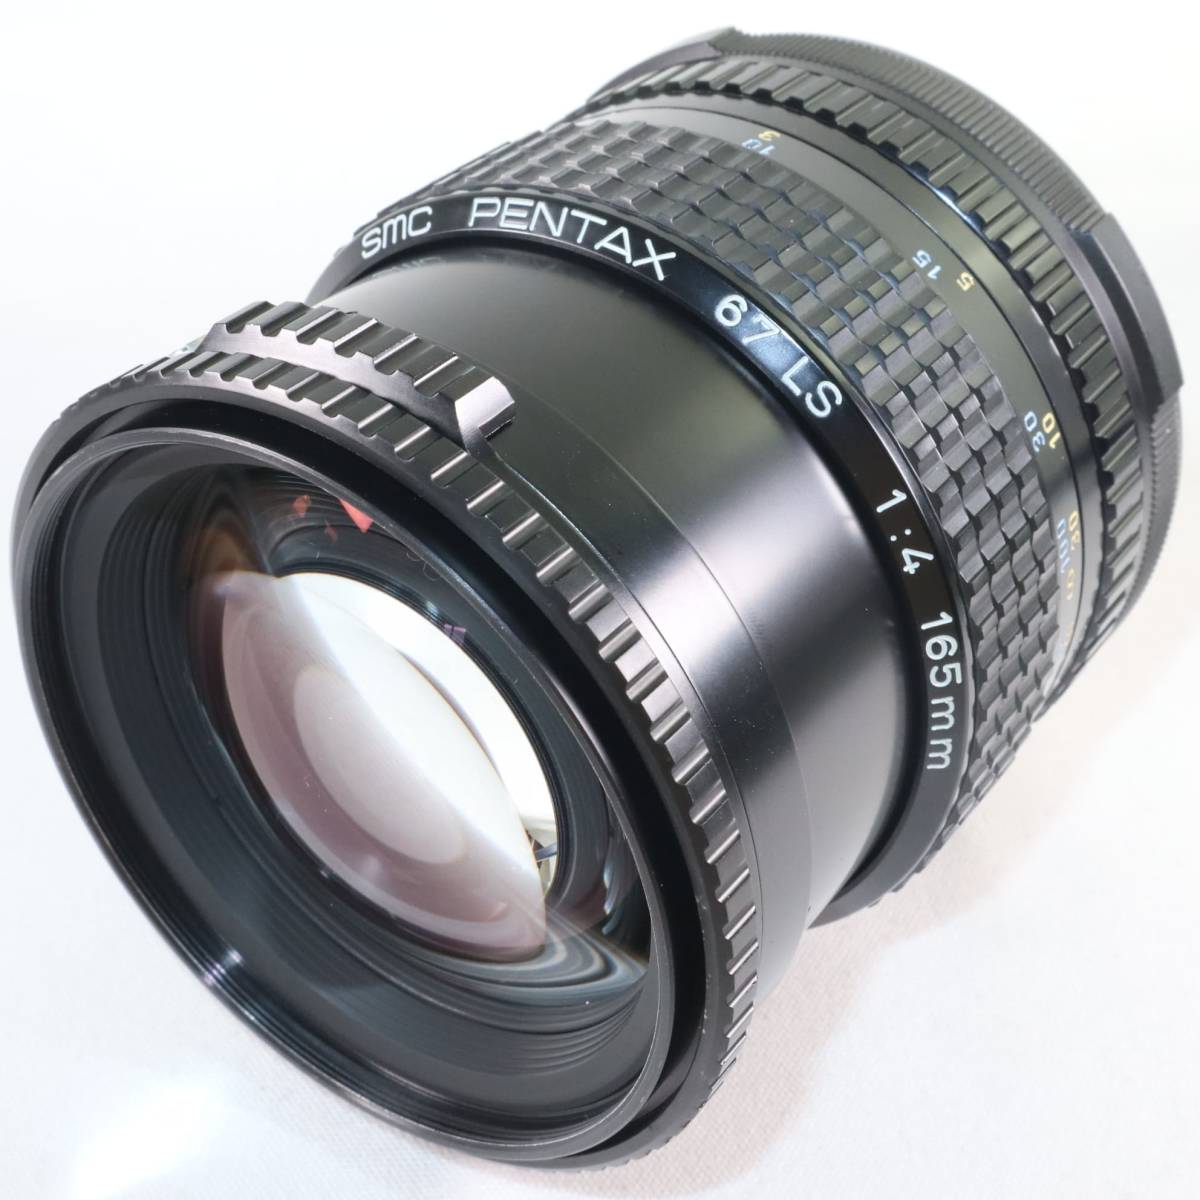 極上美品 SMC PENTAX 67 LS F4 165mm ペンタックス 中判レンズ 単焦点レンズ 67 67II k2395_画像5